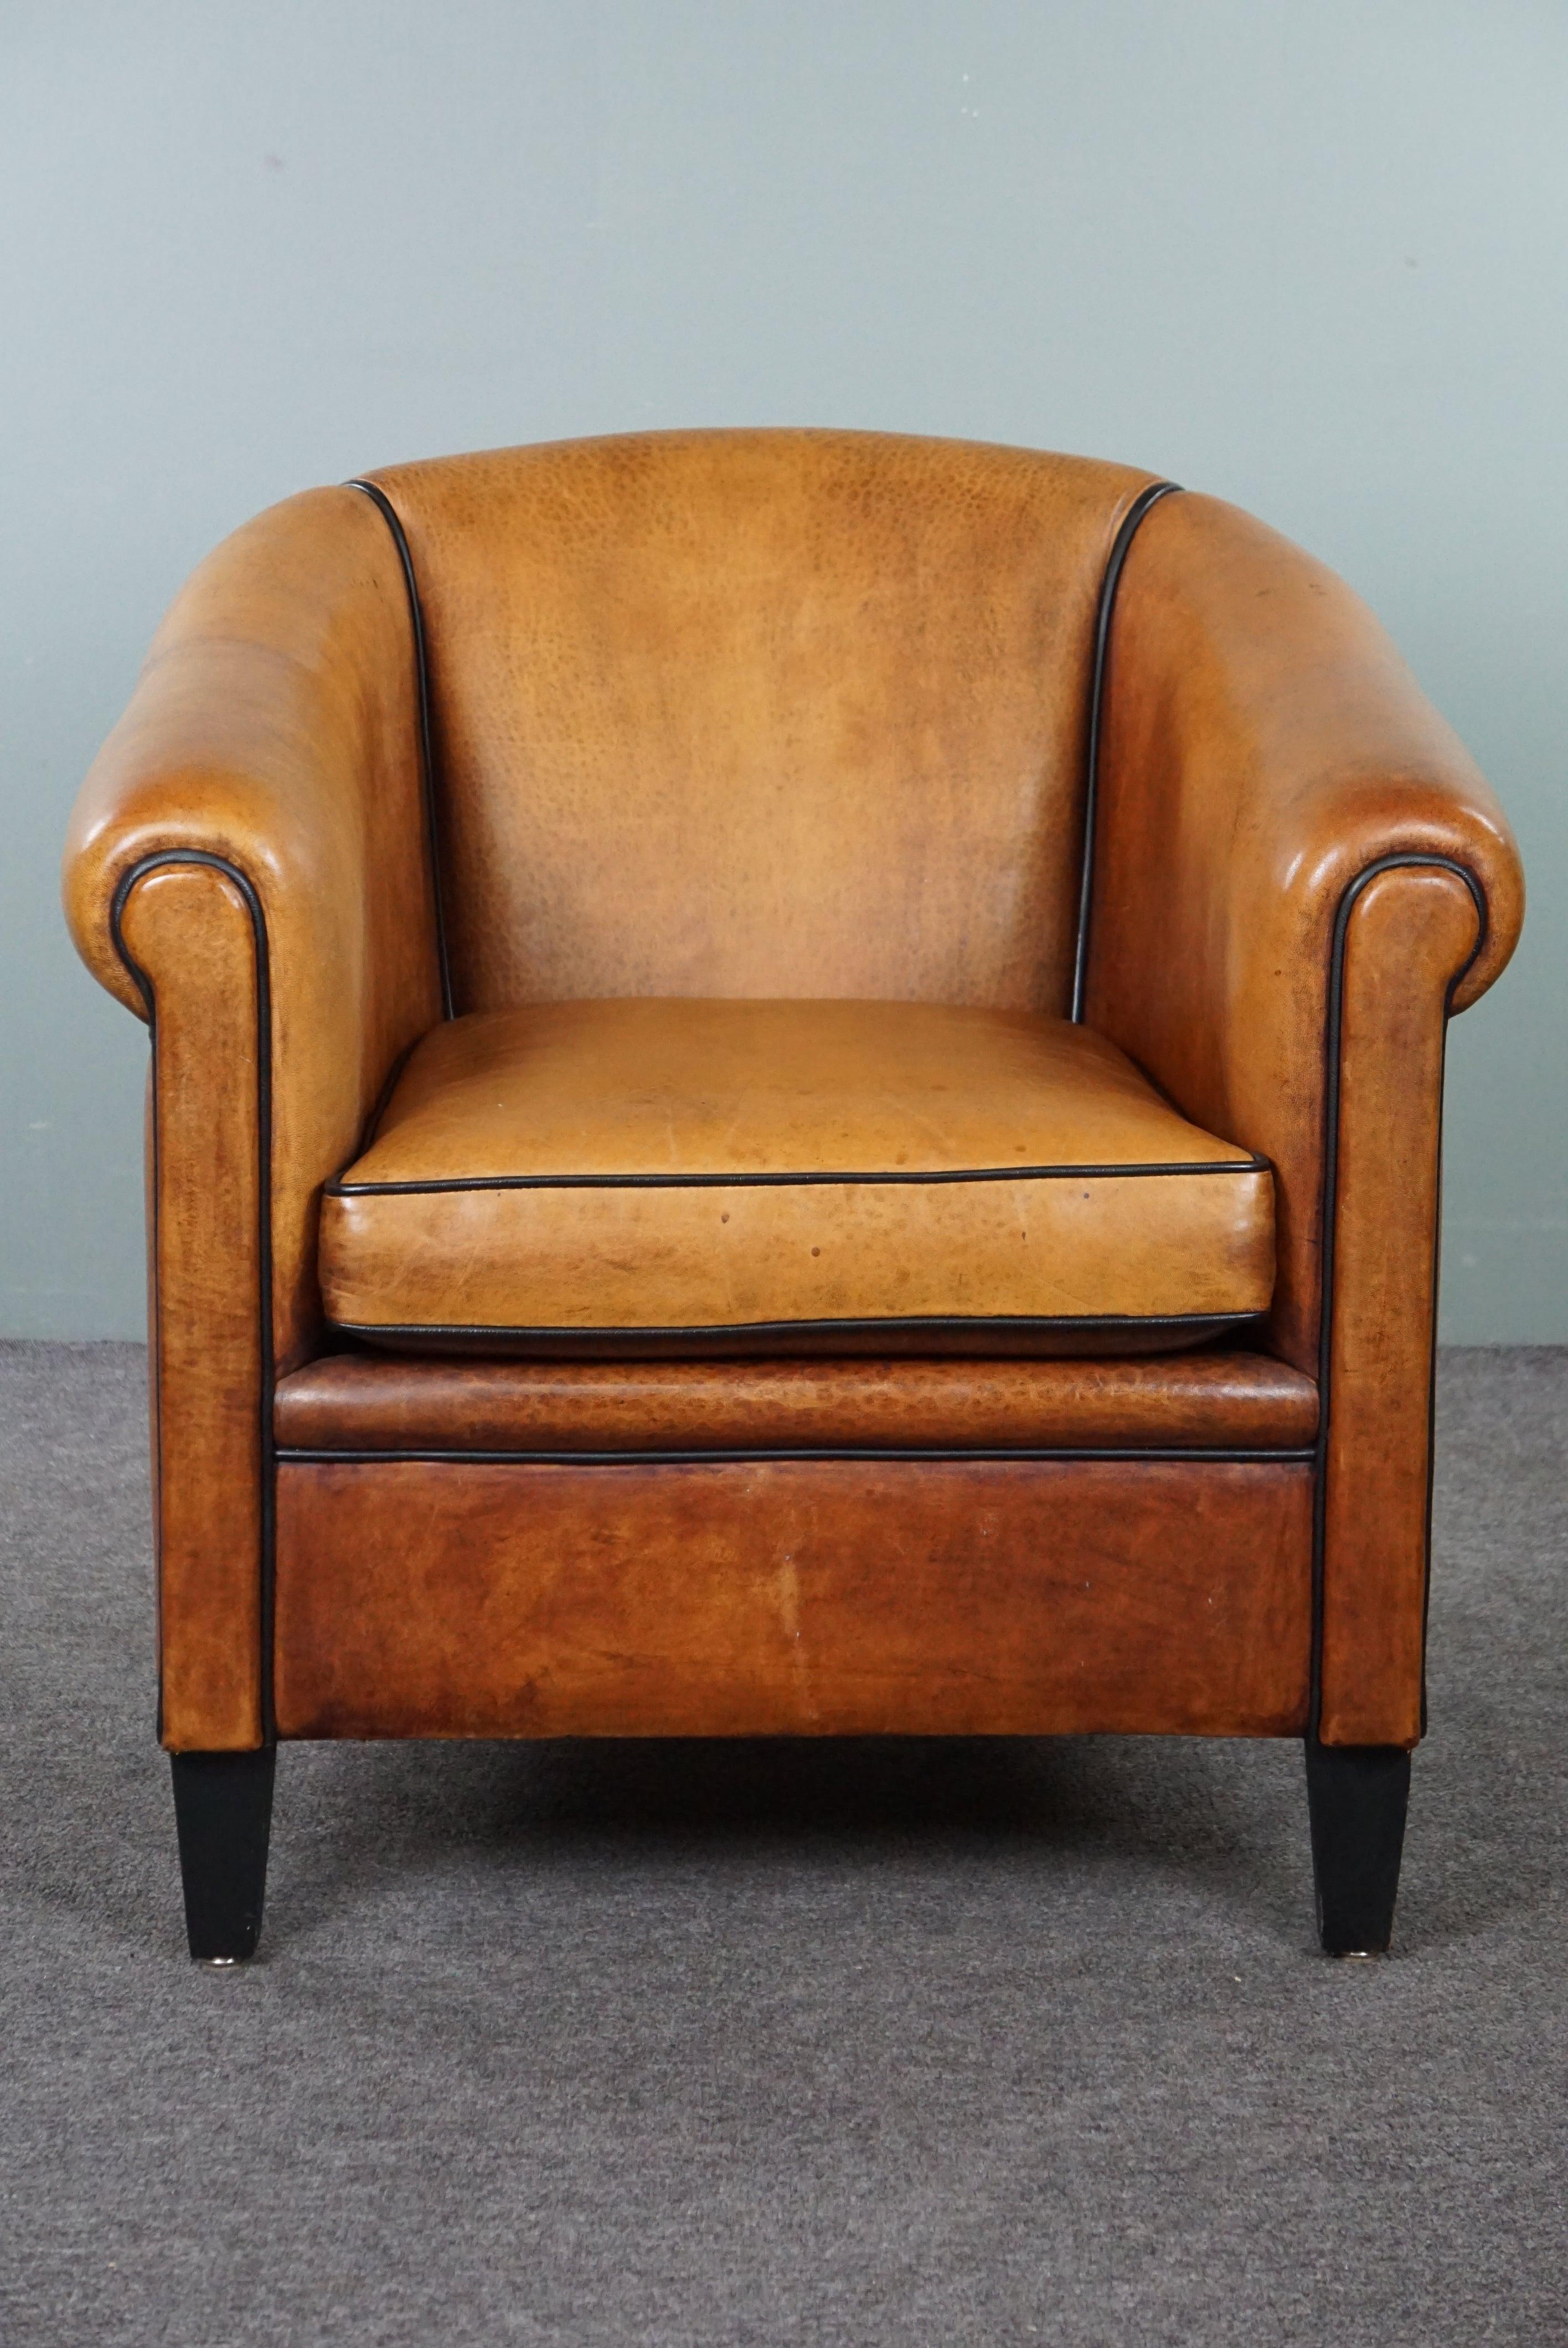 Angeboten wird dieser elegante und gut erhaltene Clubsessel aus Schafsleder. Hier präsentieren wir Ihnen einen hochwertigen und atemberaubenden Clubsessel aus Schafsleder. Dieser Sessel ist in gutem Zustand und bietet einen wunderbaren Sitzkomfort.